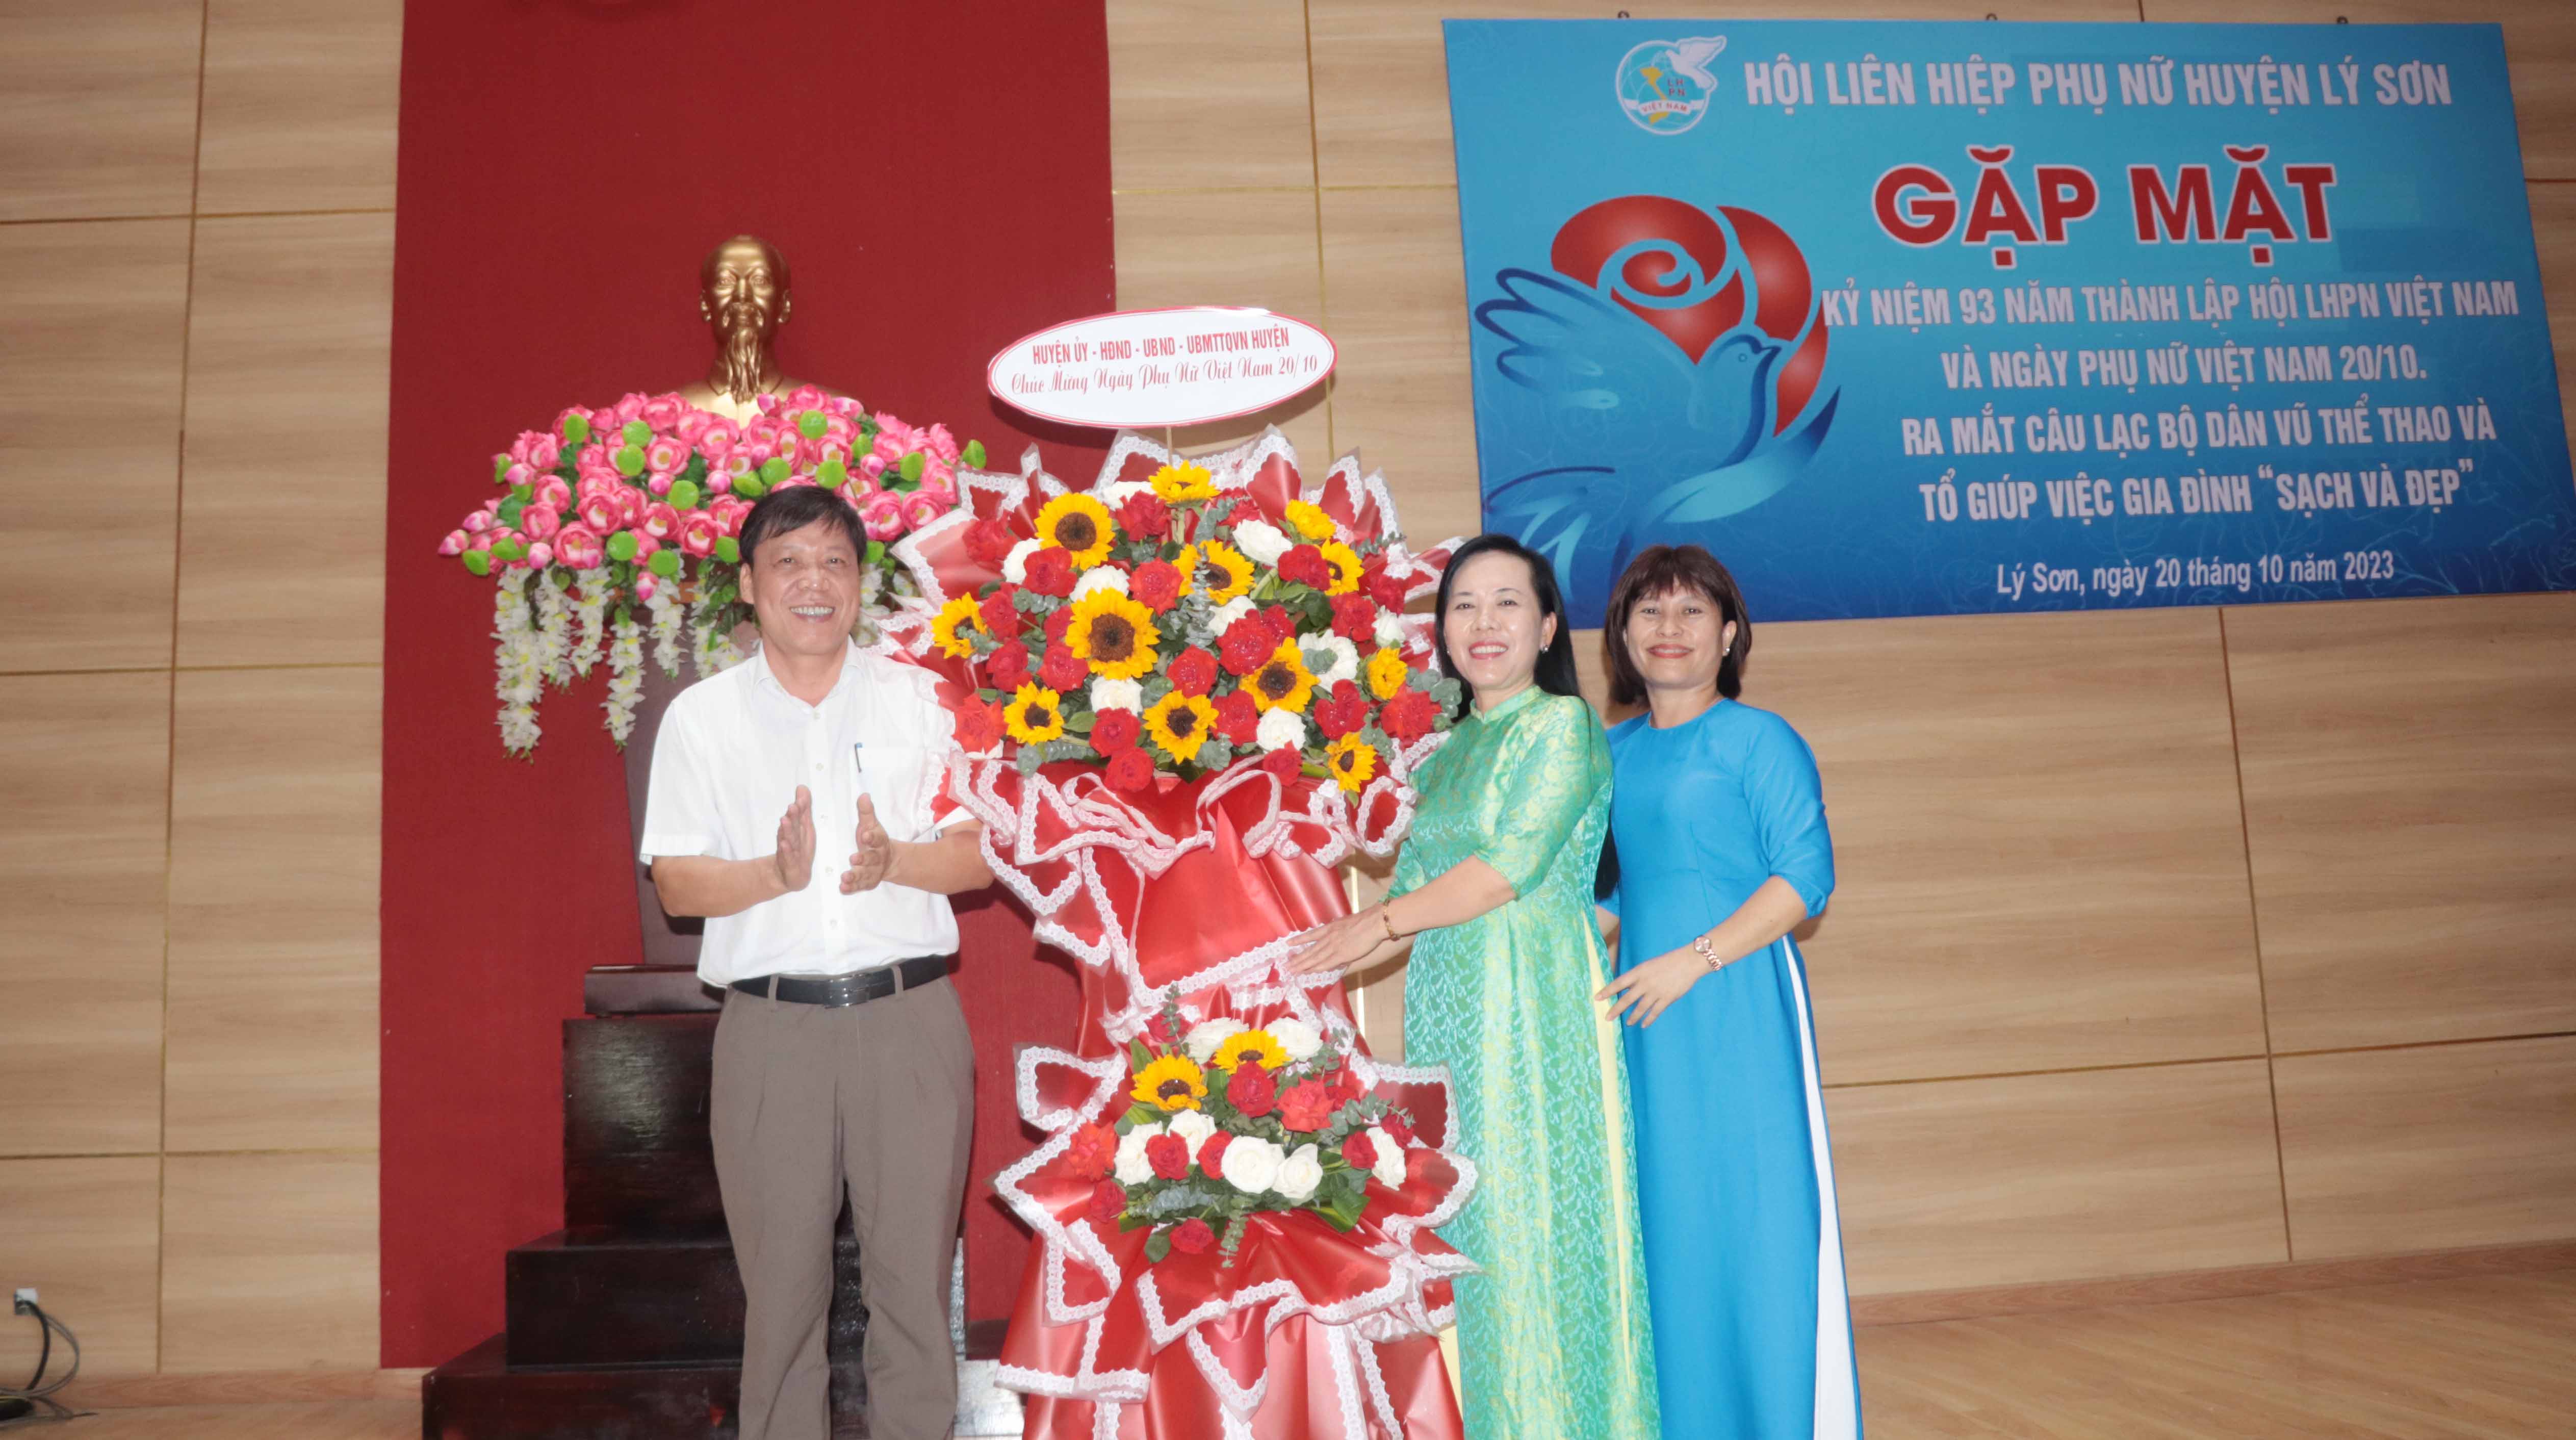 Lý Sơn gặp mặt kỷ niệm 93 năm Ngày thành lập Hội LHPN Việt Nam